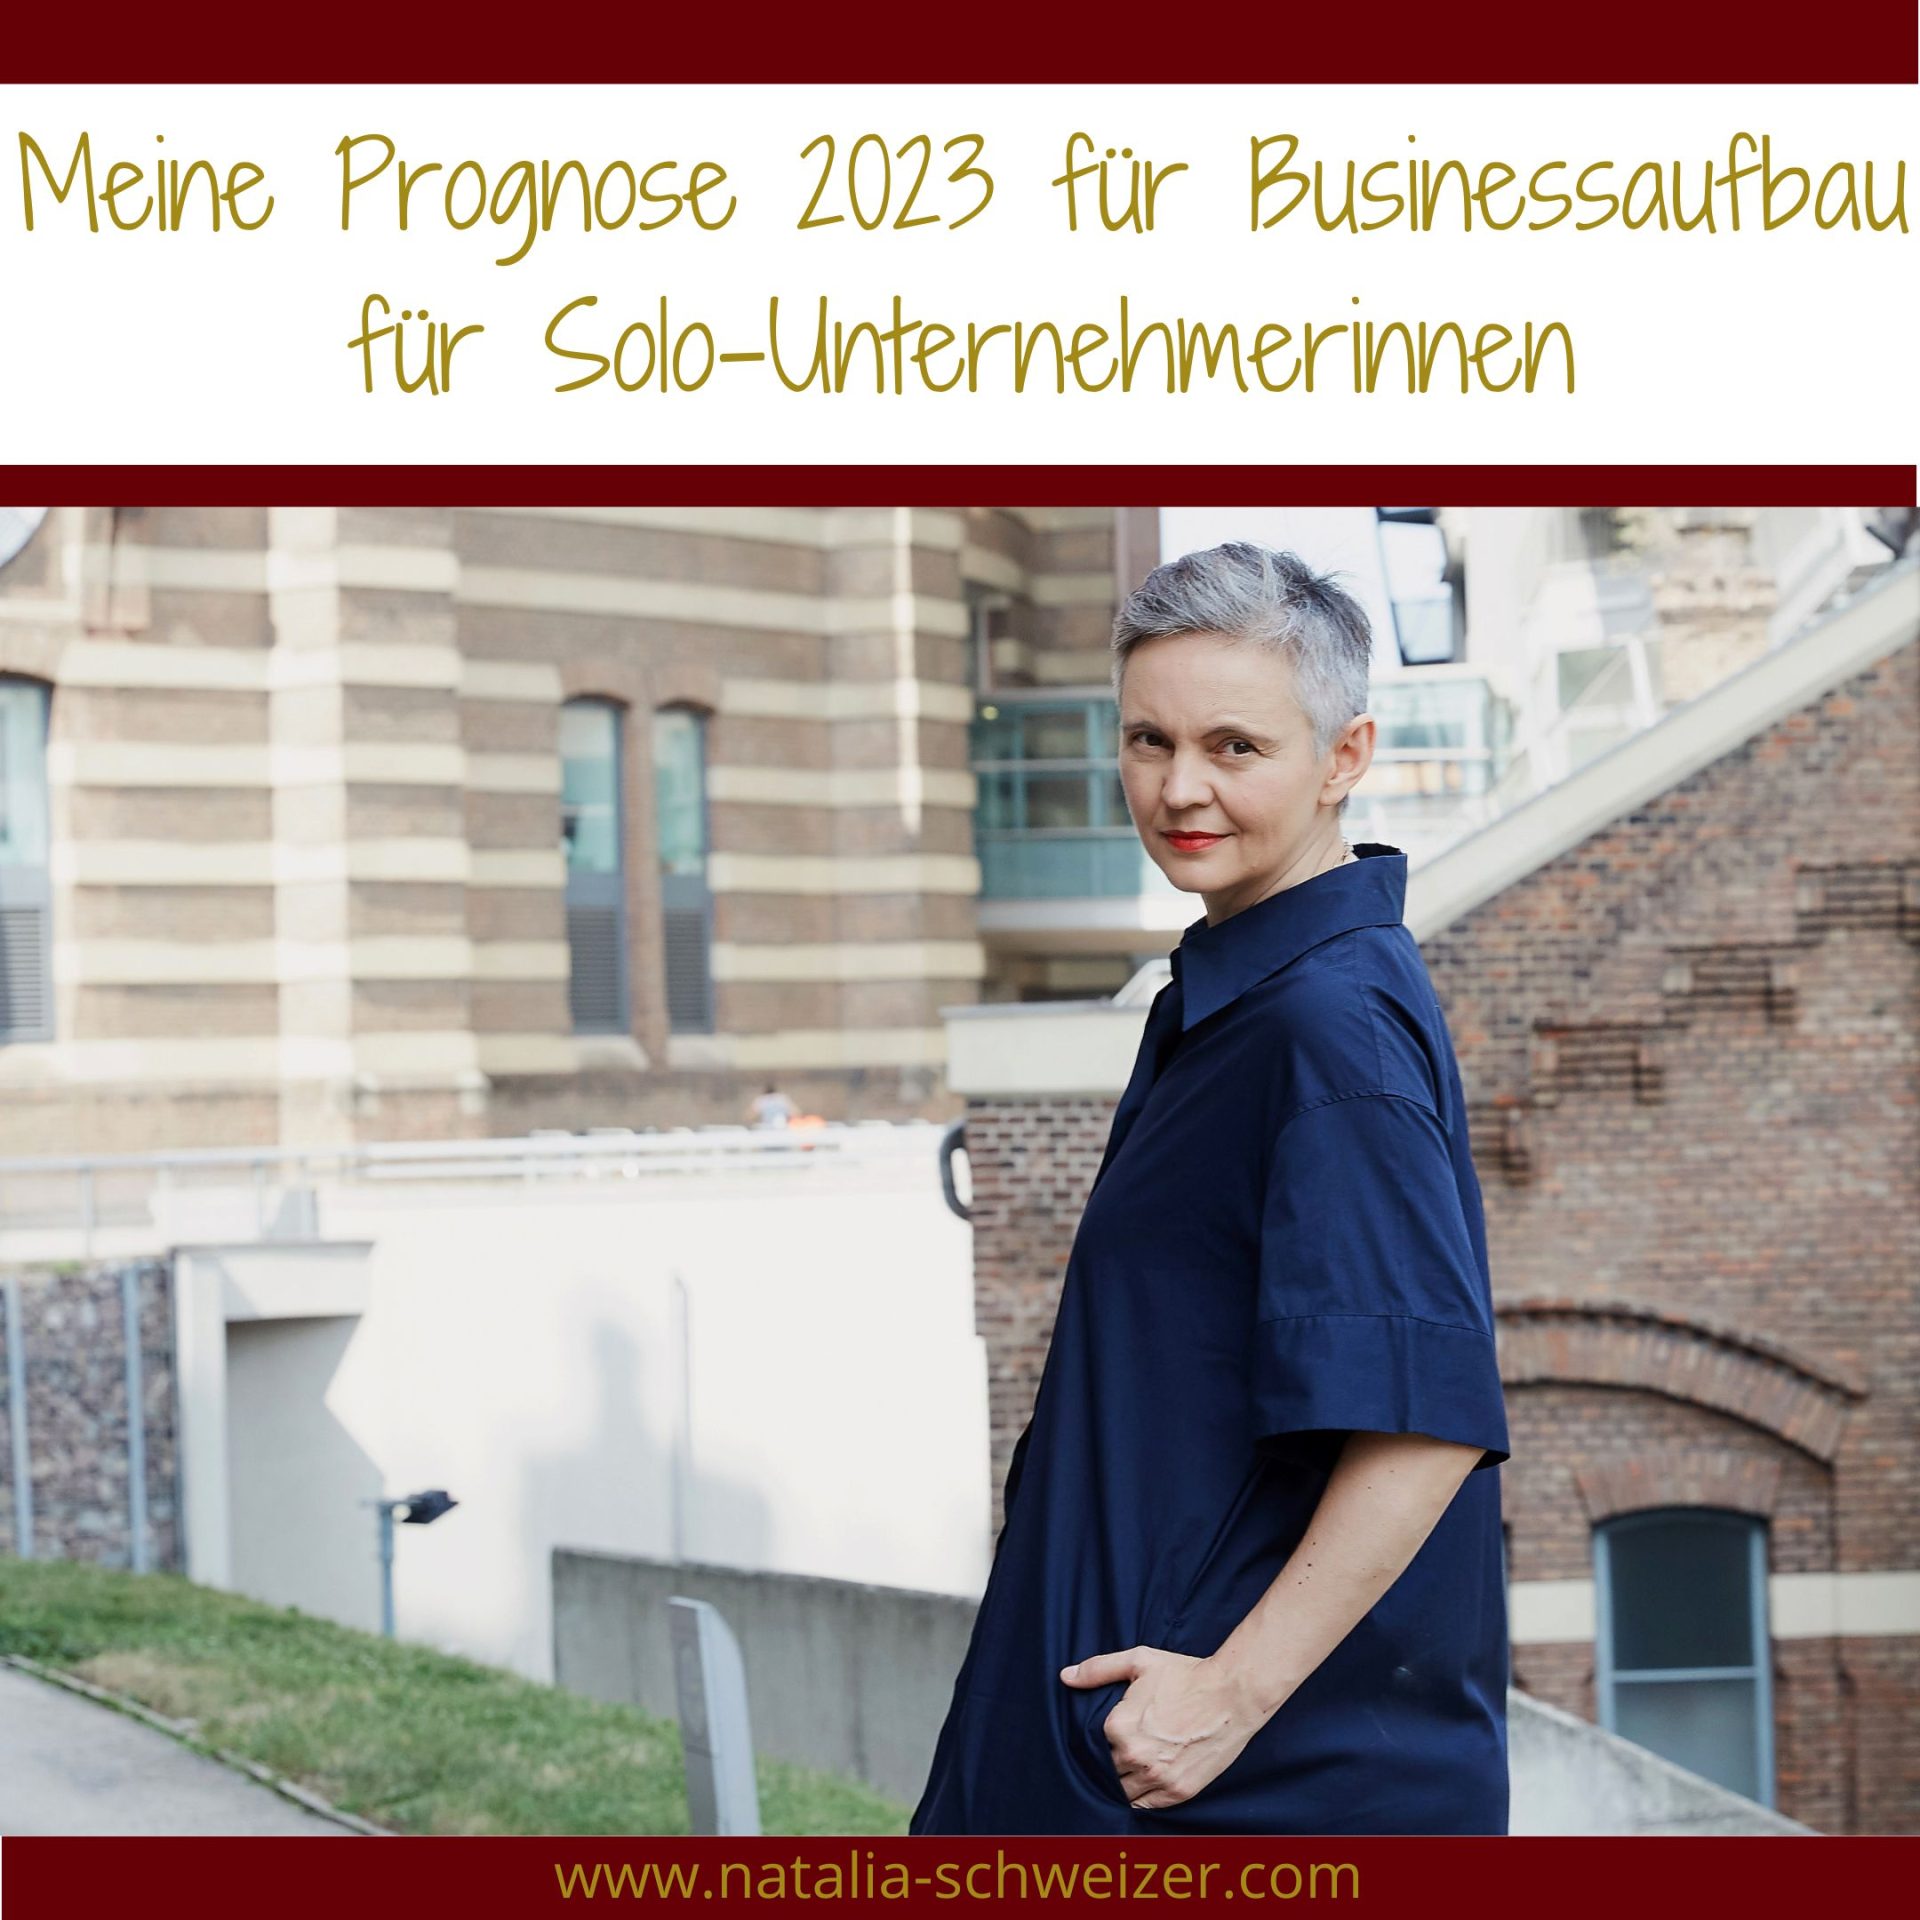 Meine Prognose 2023 im Businessaufbau für Solo-Unternehmerinnen